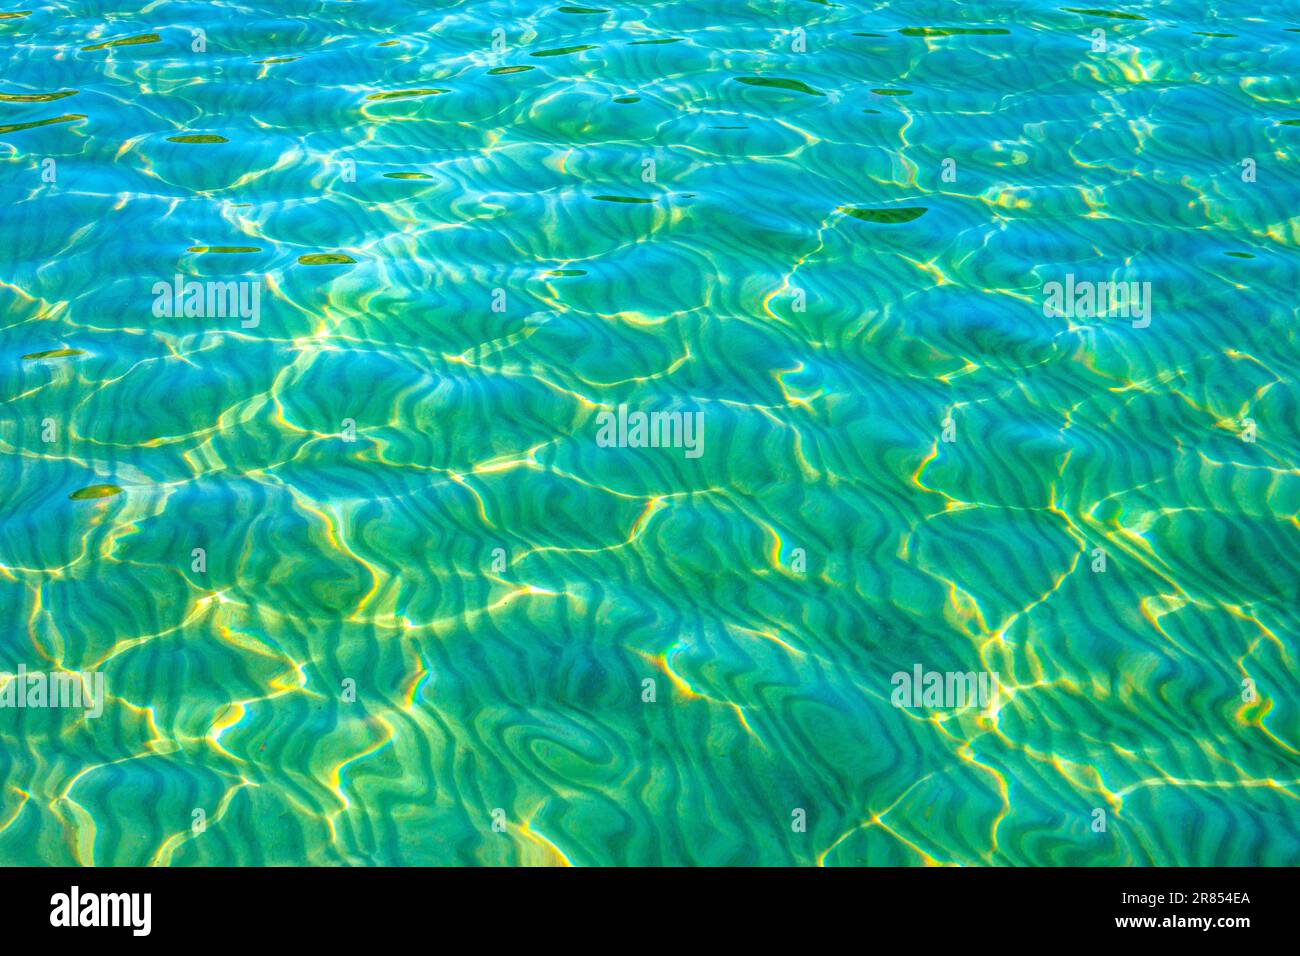 Kristallklares Wasser an einem hebridischen Strand, Isle of Mull, Schottland, Großbritannien Stockfoto